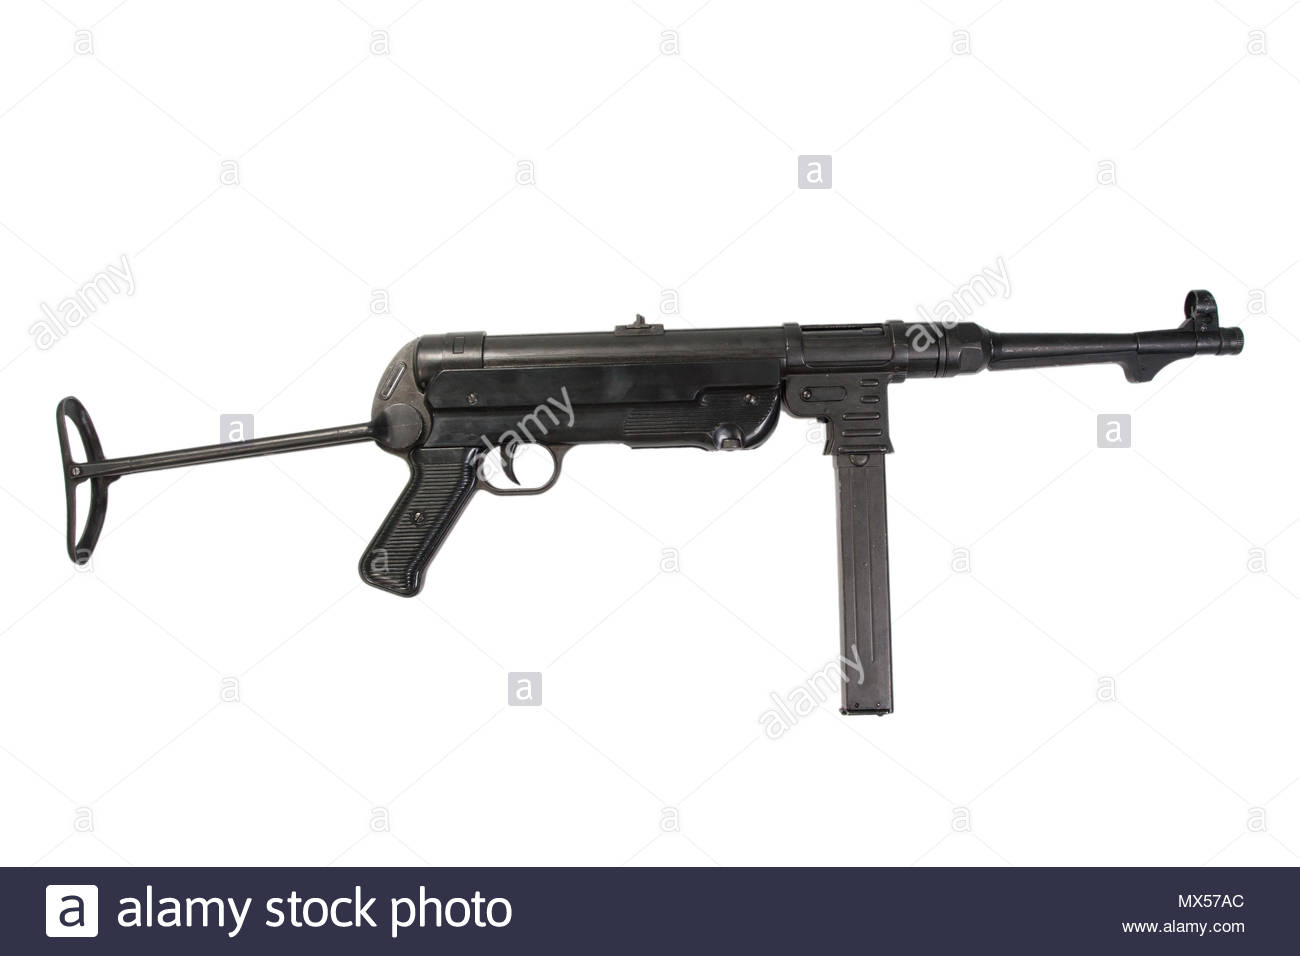 MP40 submachine gun on white background Stock Photo 188200276   Alamy 1300x956